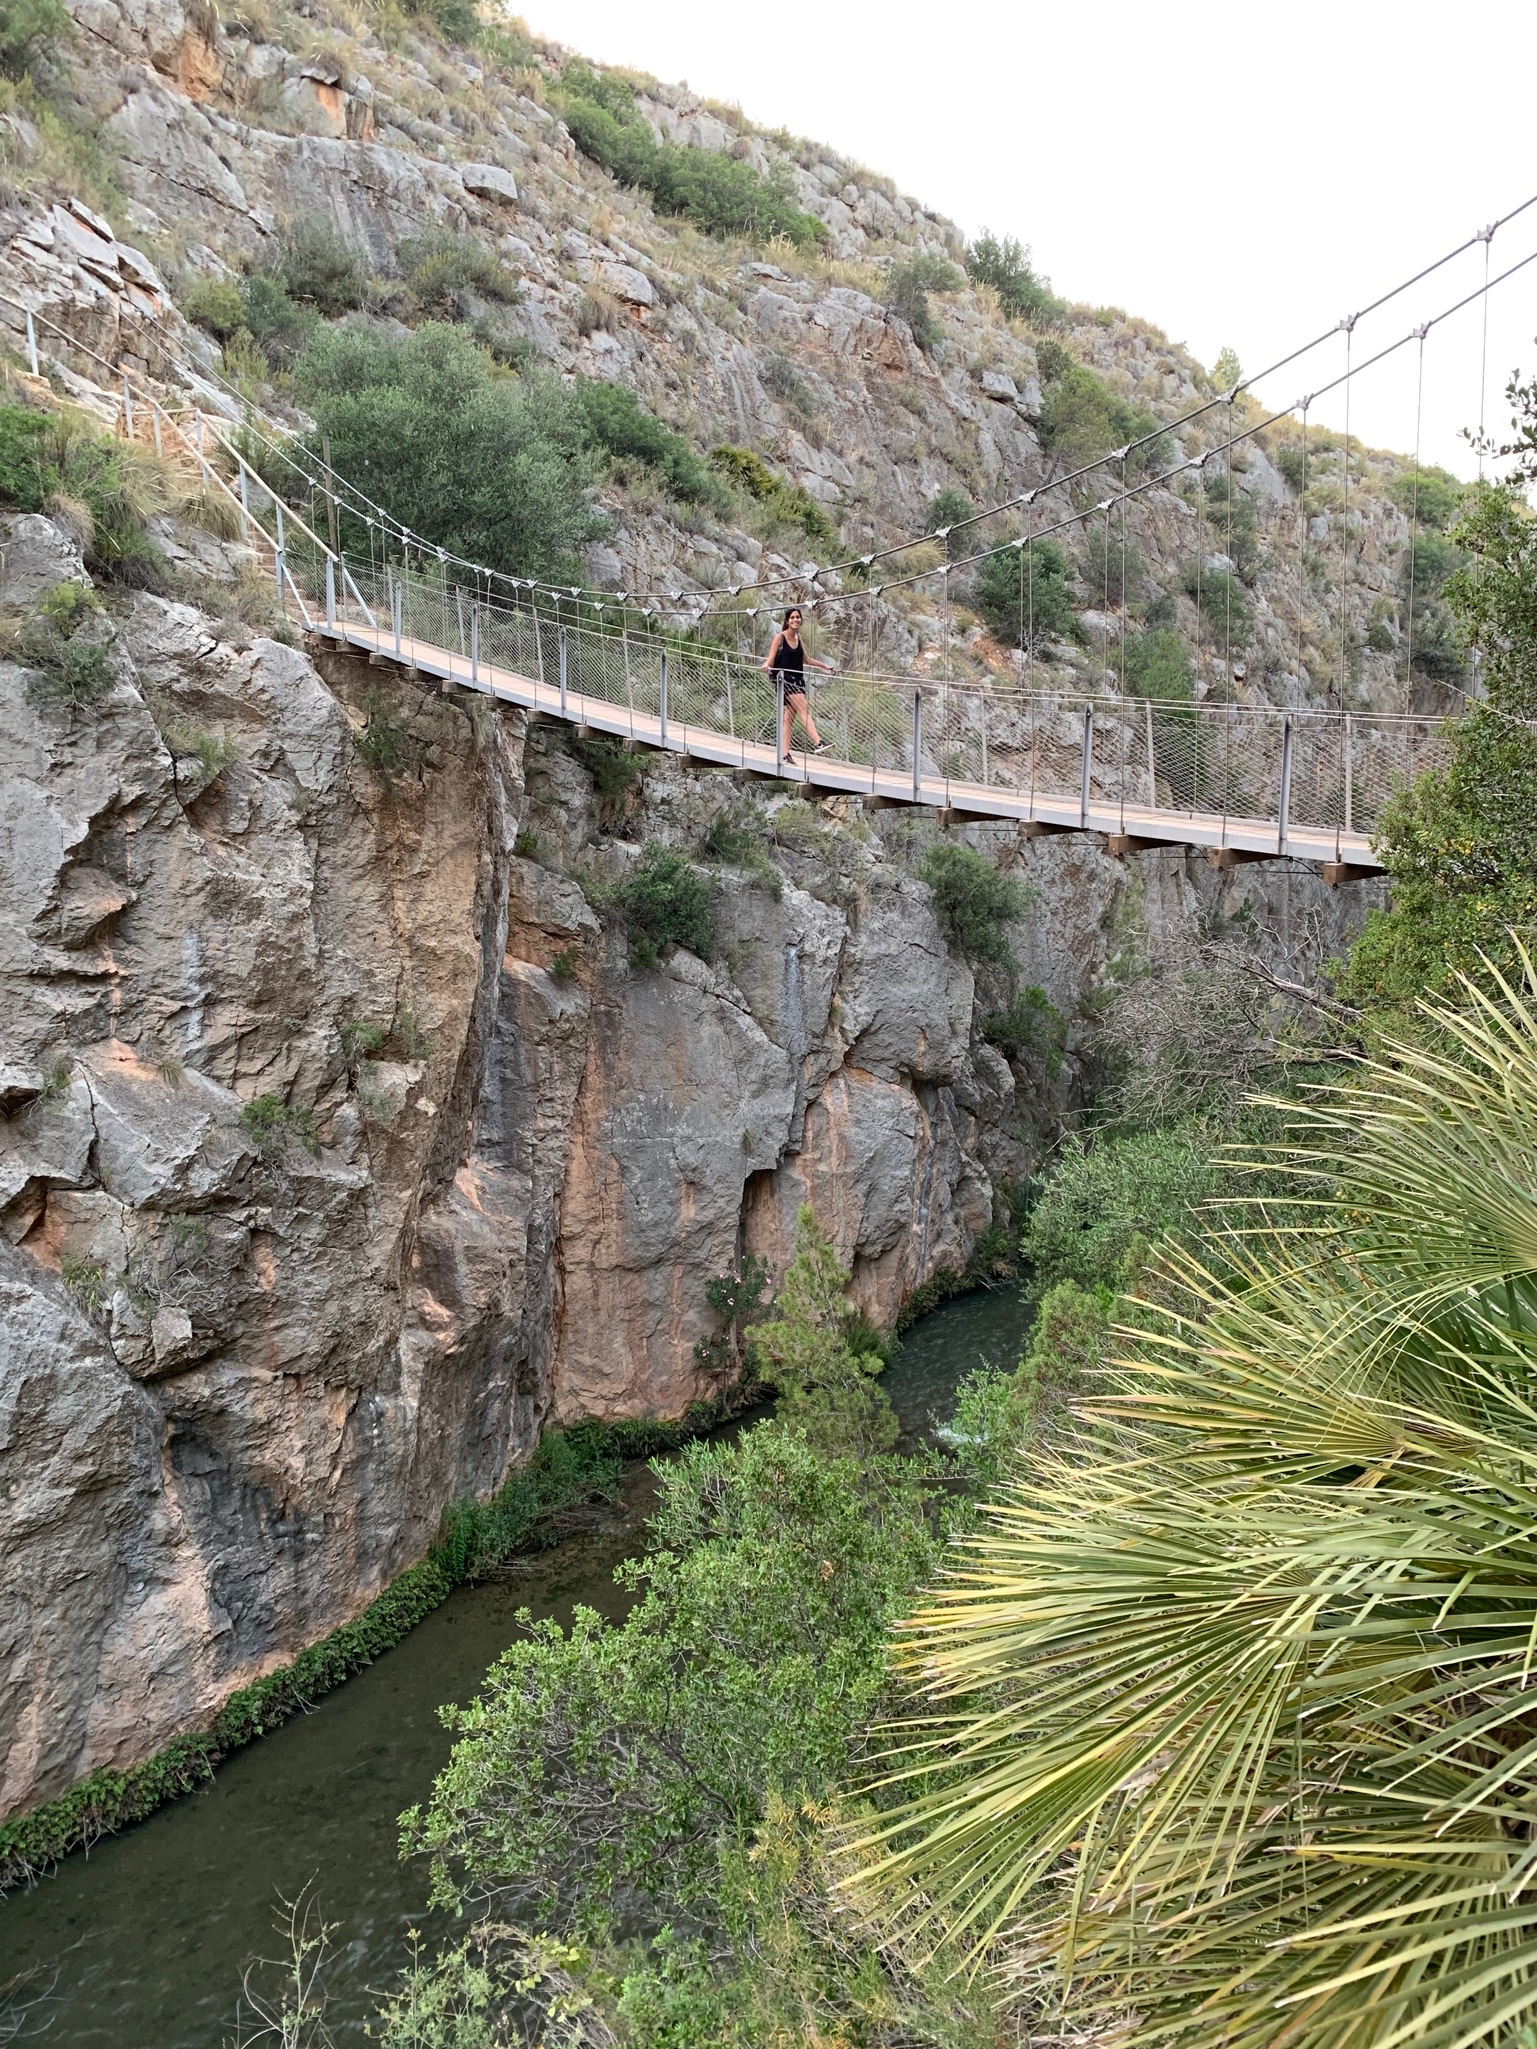 Ruta de puentes colgantes (Chulilla, Valencia) - serraniaaventura.com